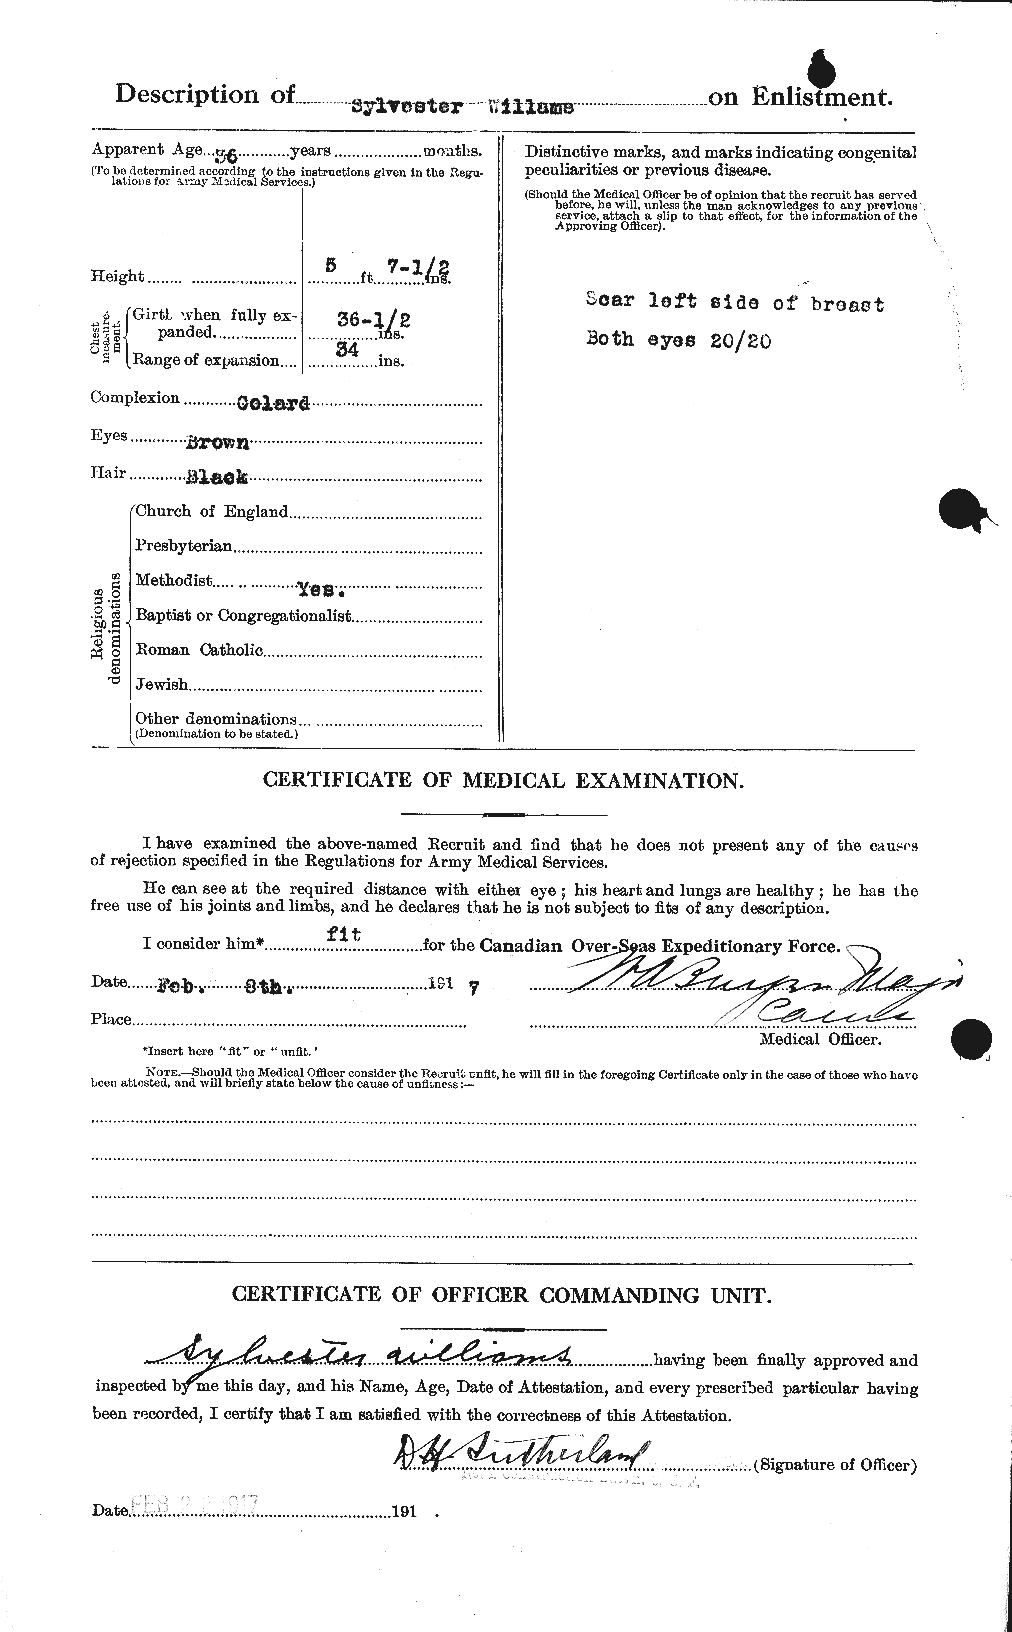 Dossiers du Personnel de la Première Guerre mondiale - CEC 676624b